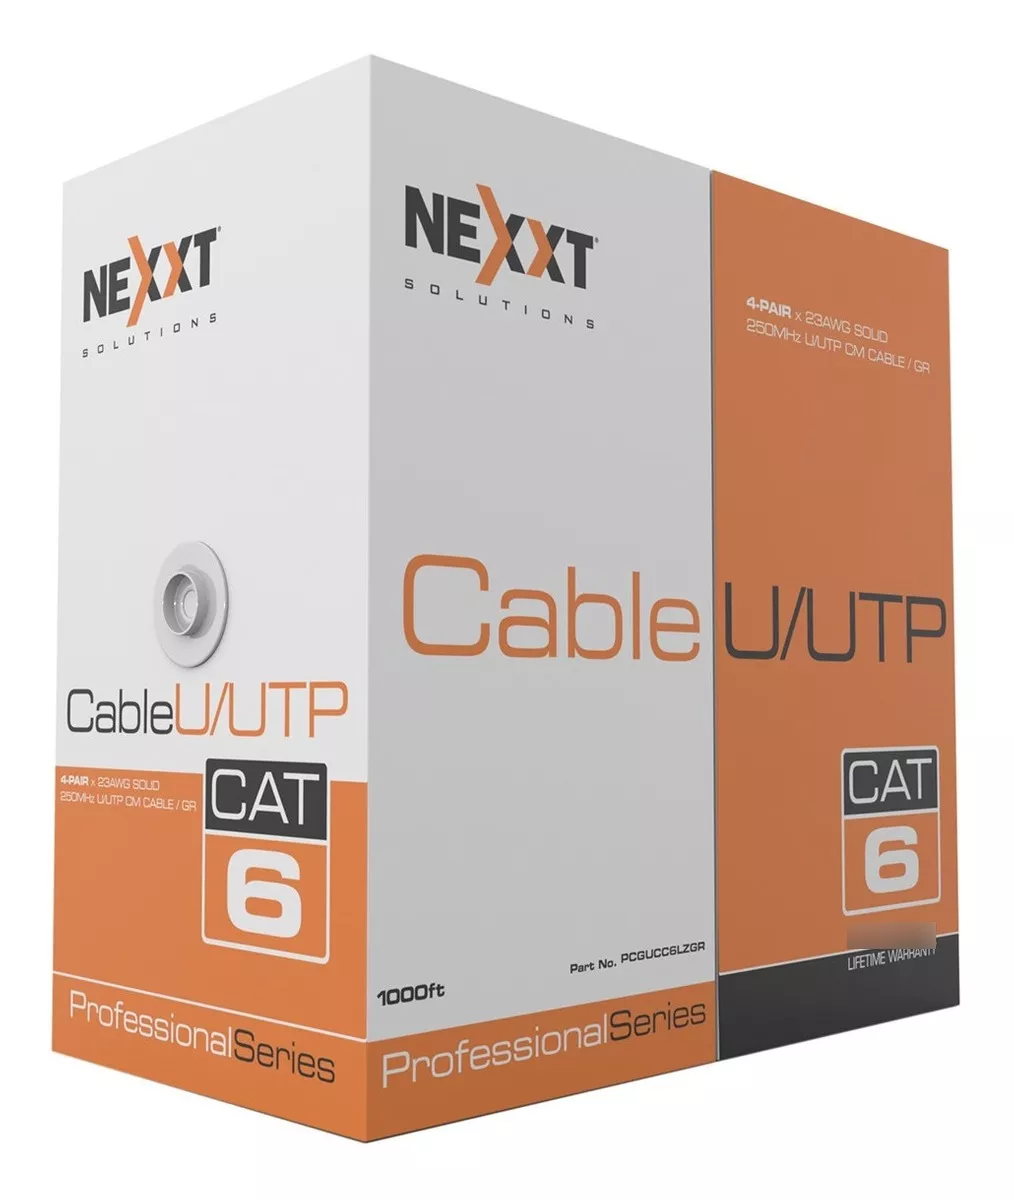 Cable Red U/utp Nexxt Cat 6 305m Interior Certifica Gigabit